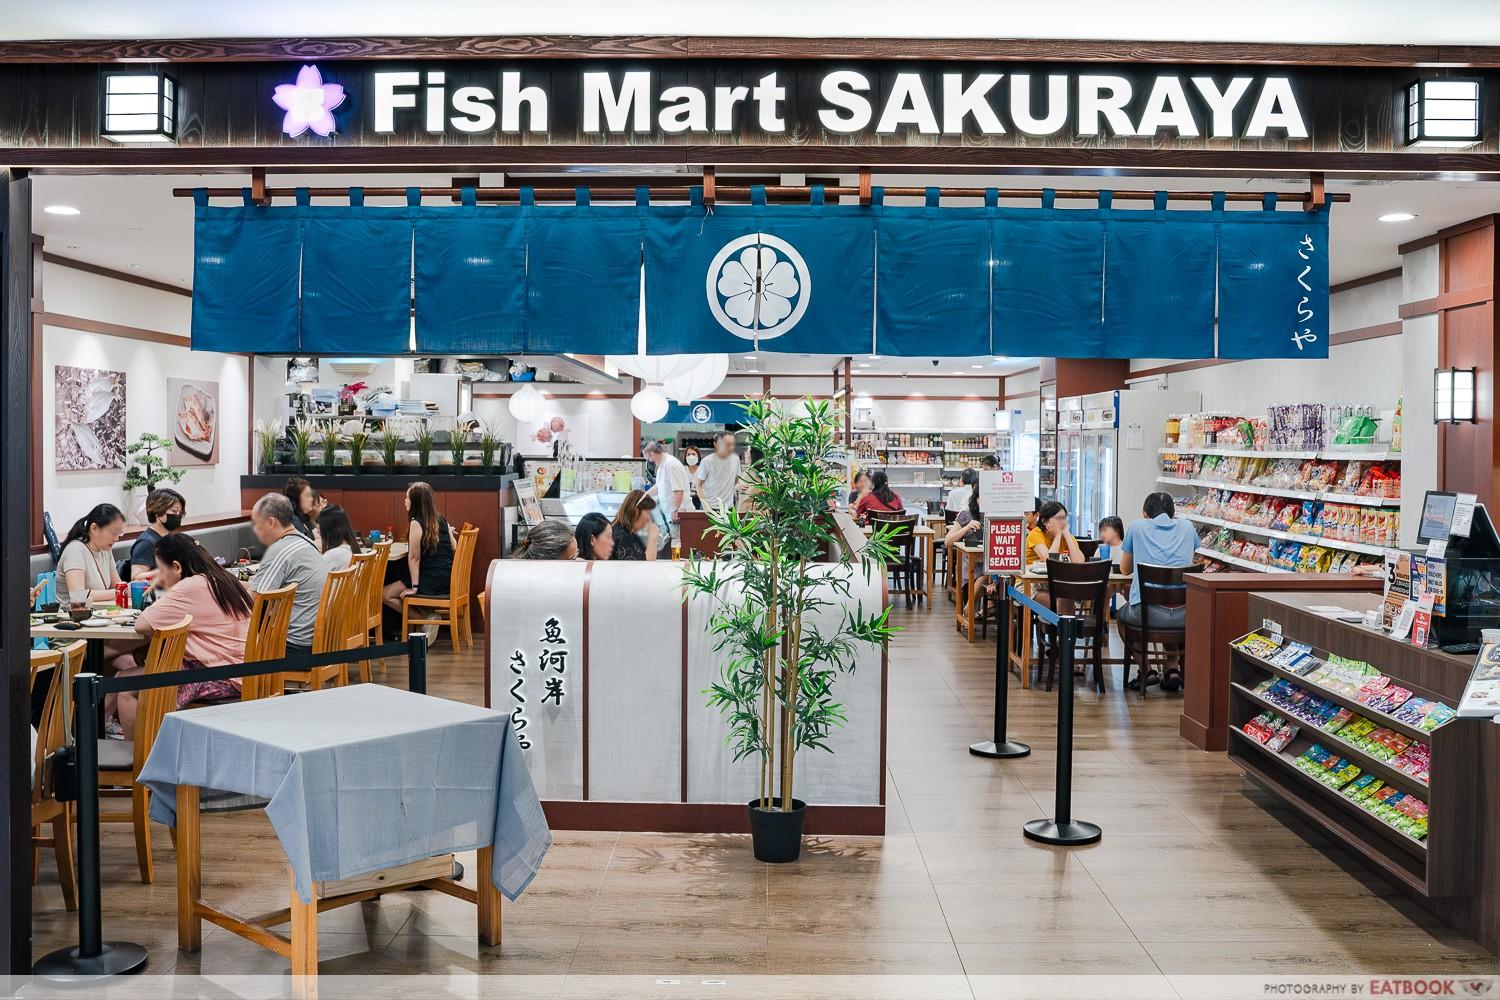 parkway-parade-food-fish-mart-sakuraya-storefront